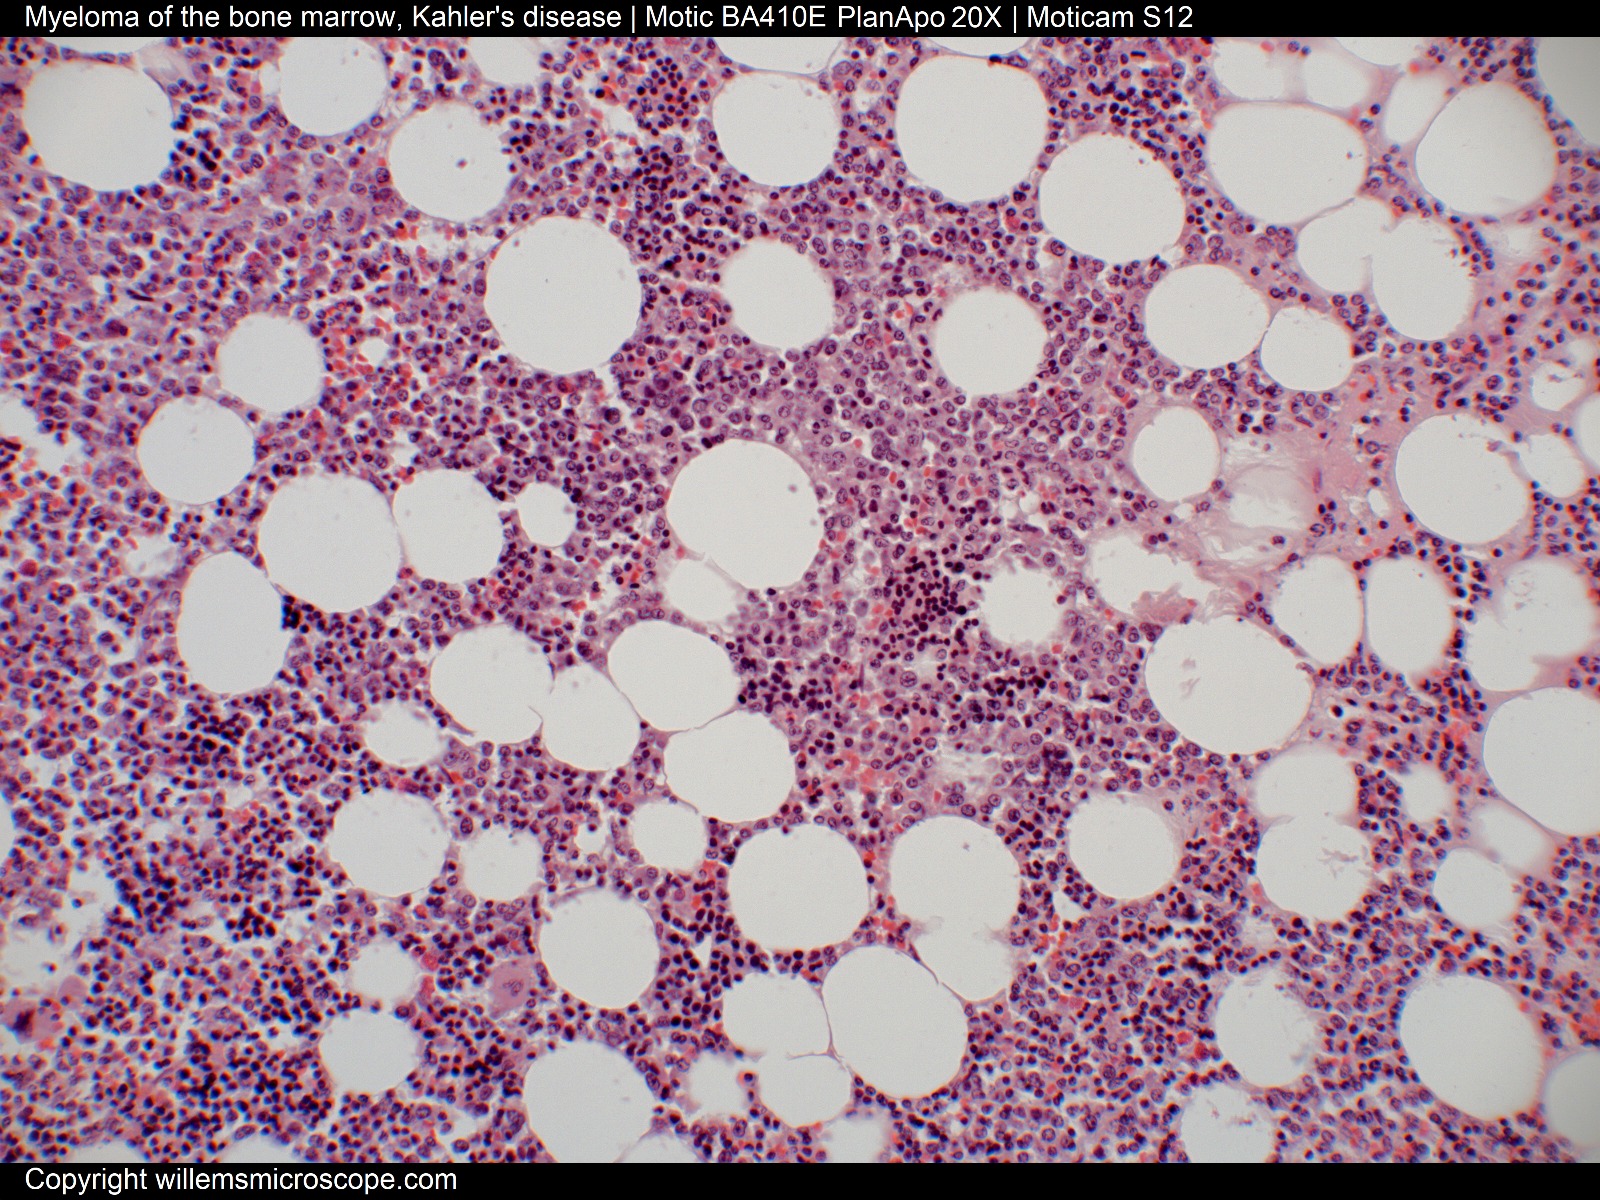 Myeloma of the bone marrow.